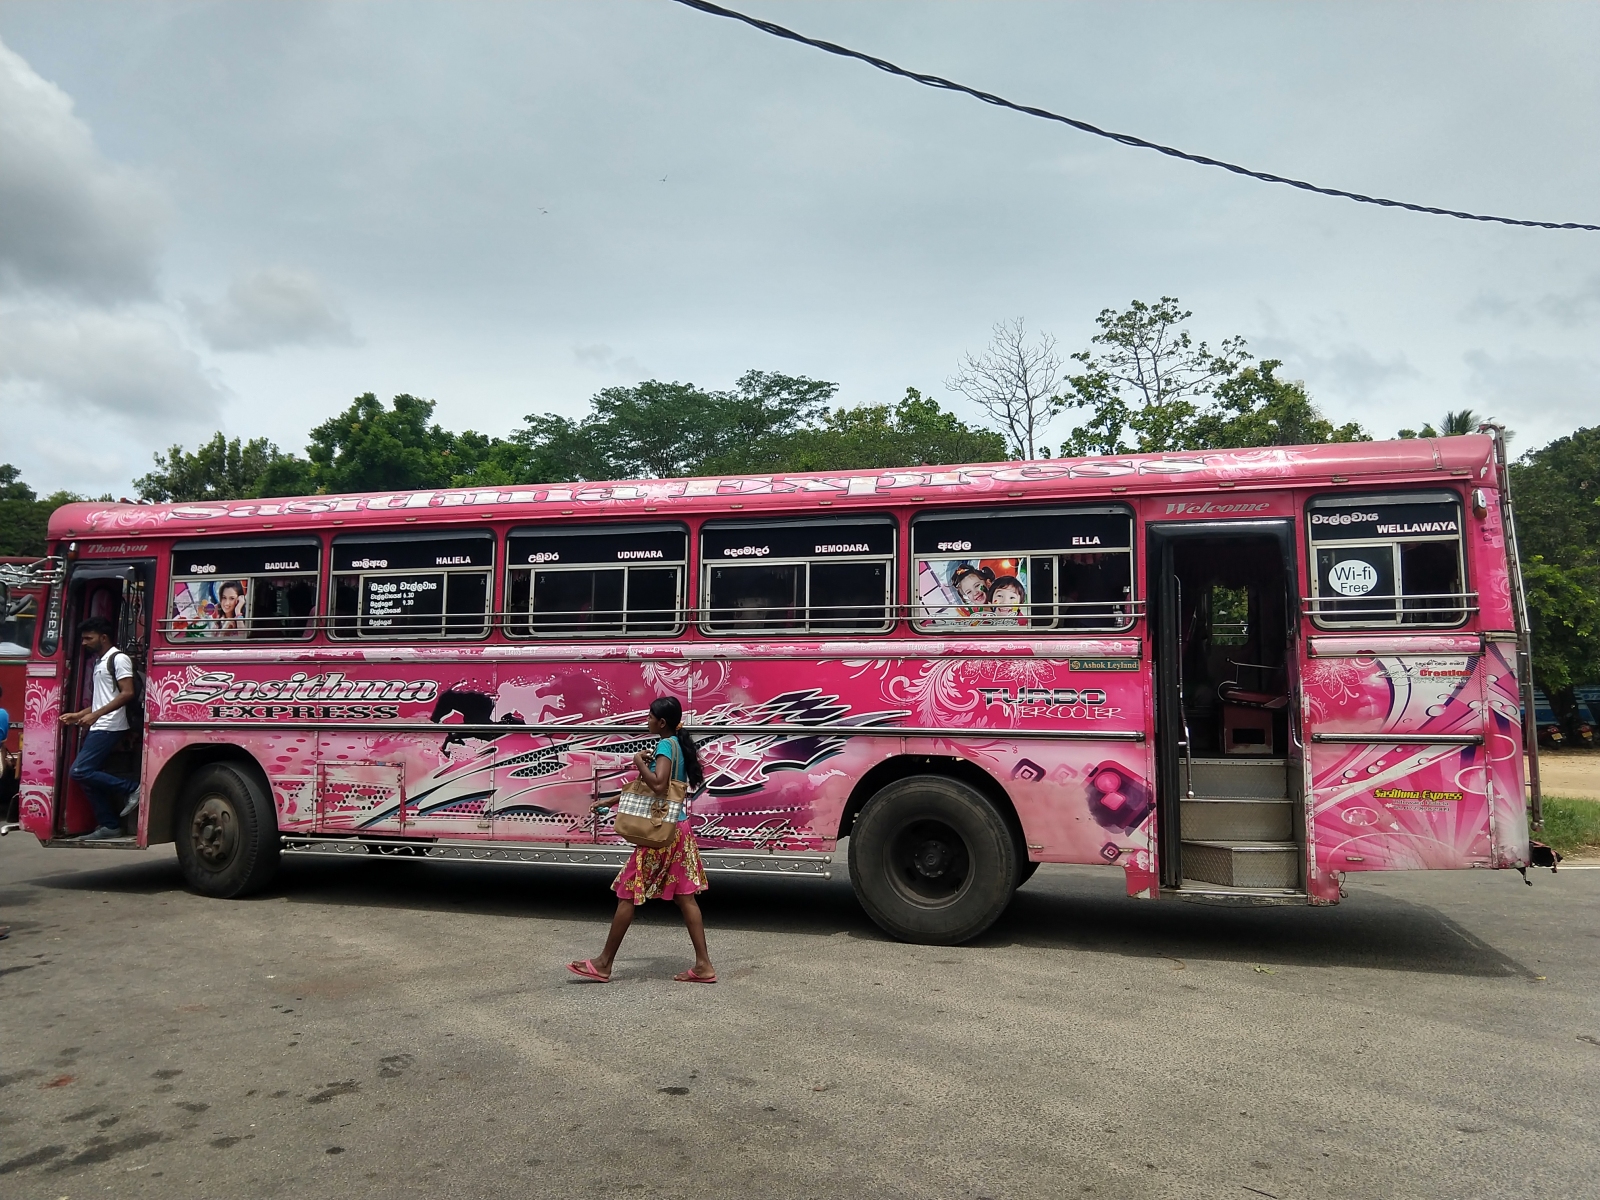 Sri Lanka Buses. Traveling around Sri Lanka on cheap and colorful buses